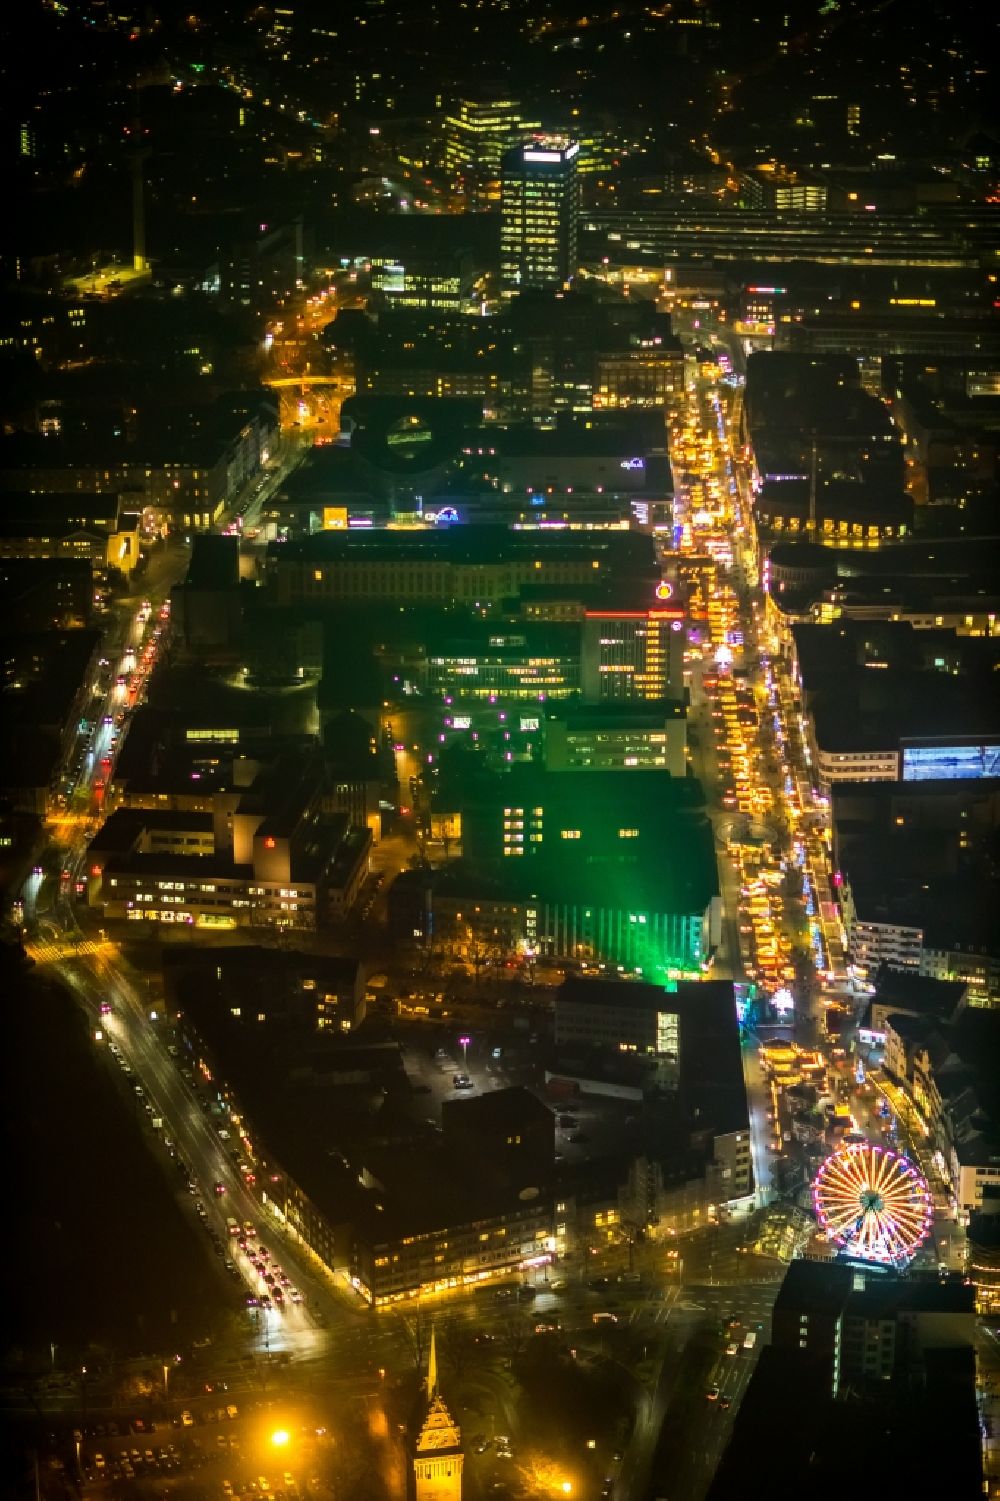 Nacht-Luftaufnahme Duisburg - Nachtluftbild Weihnachtsmarkt- Veranstaltungsgelände und Verkaufs- Hütten und Buden auf der Königsstraße in Duisburg im Bundesland Nordrhein-Westfalen